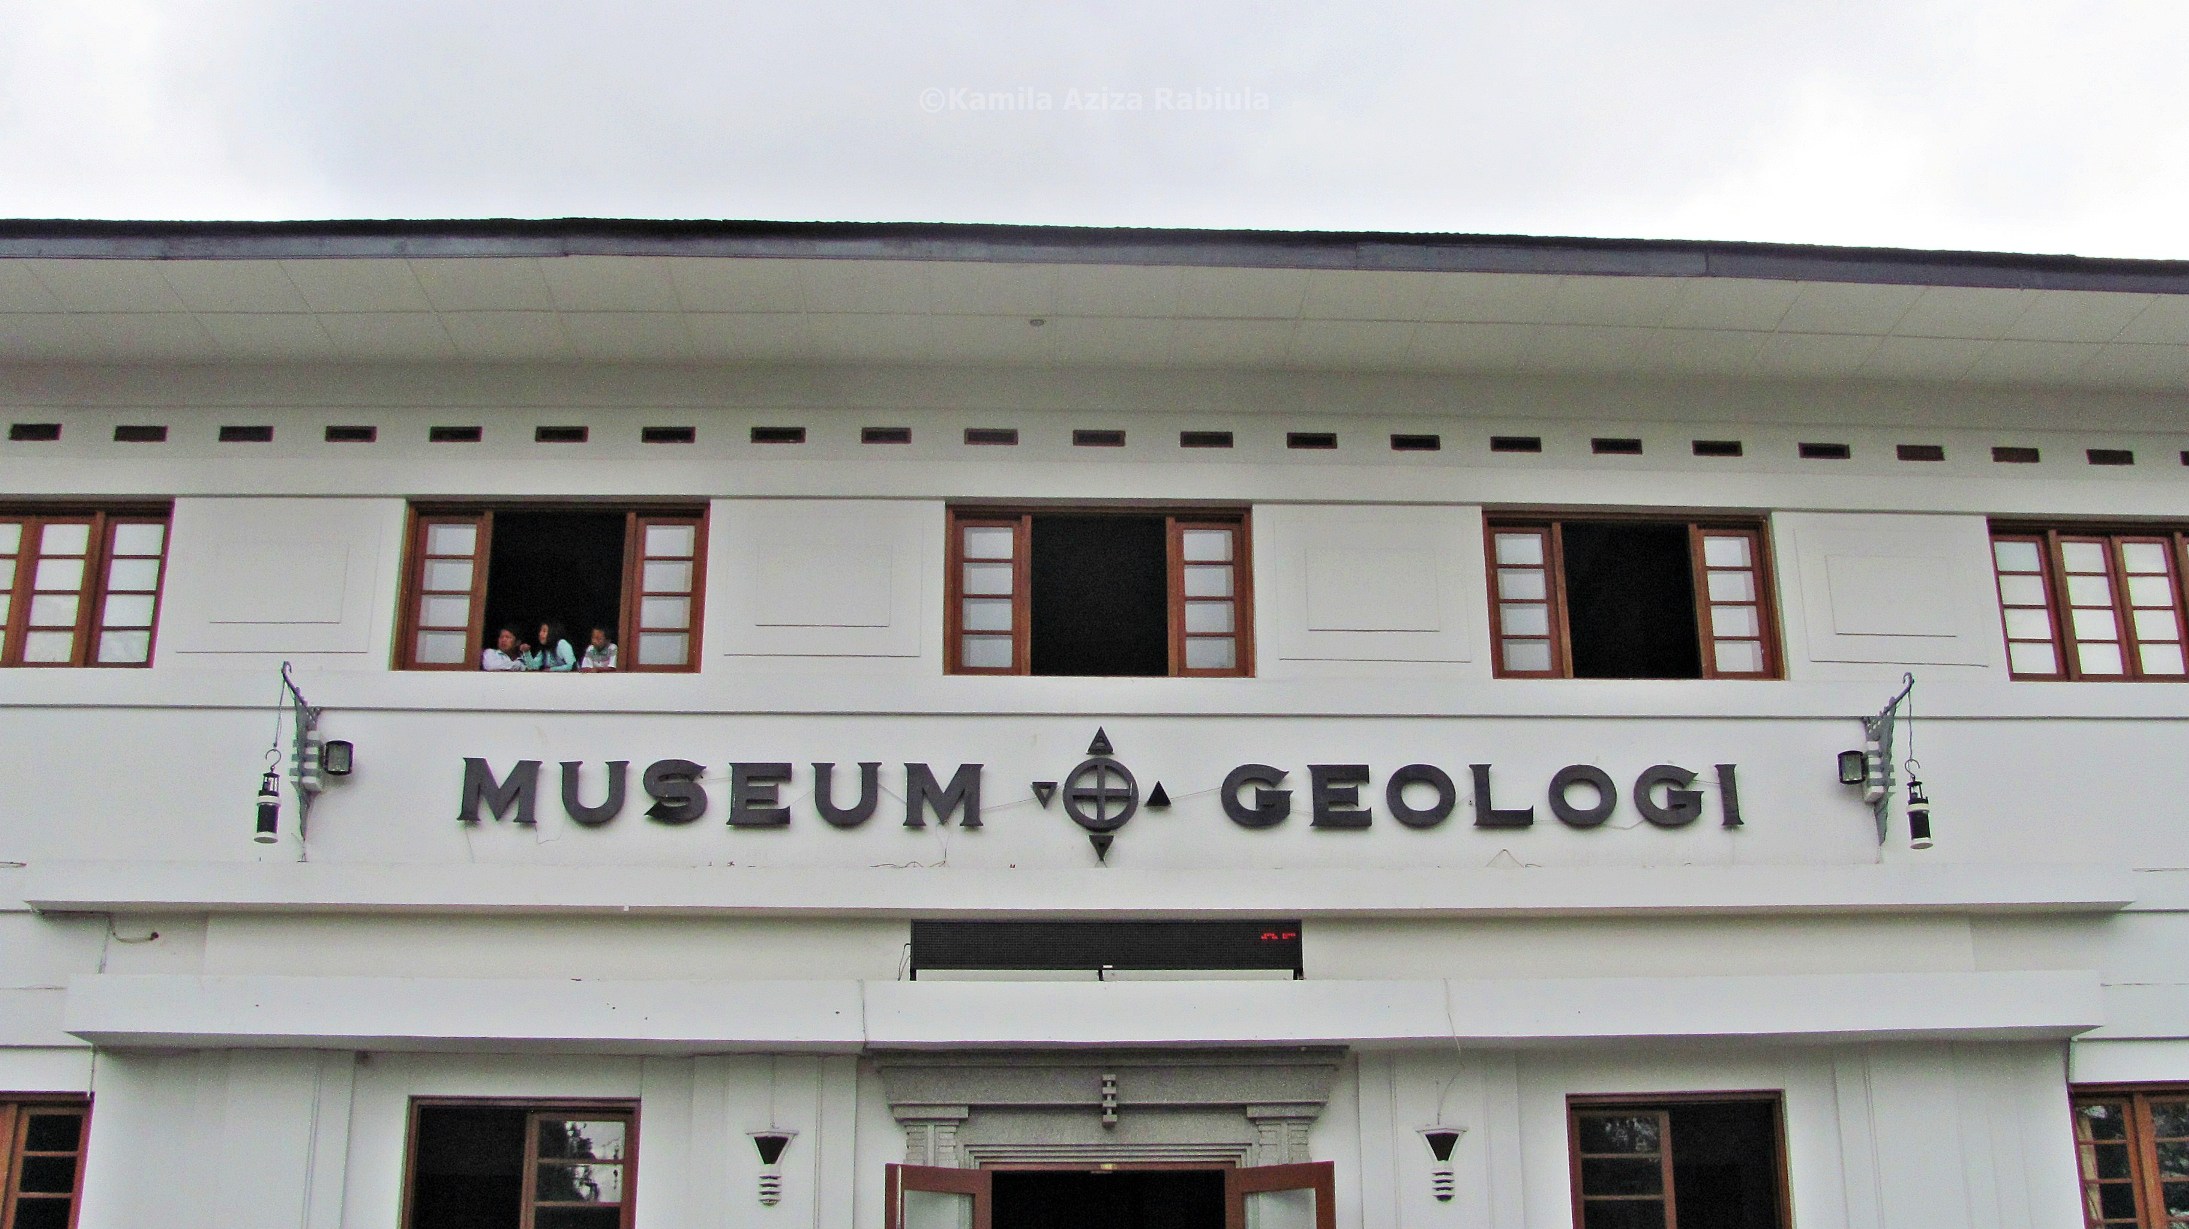 Ini adalah late post sekaligus travel post tentang jalan jalan ke Museum Geologi Bandung 4 Januari 2015 lalu Sebenarnya isinya sama aja dengan artikel